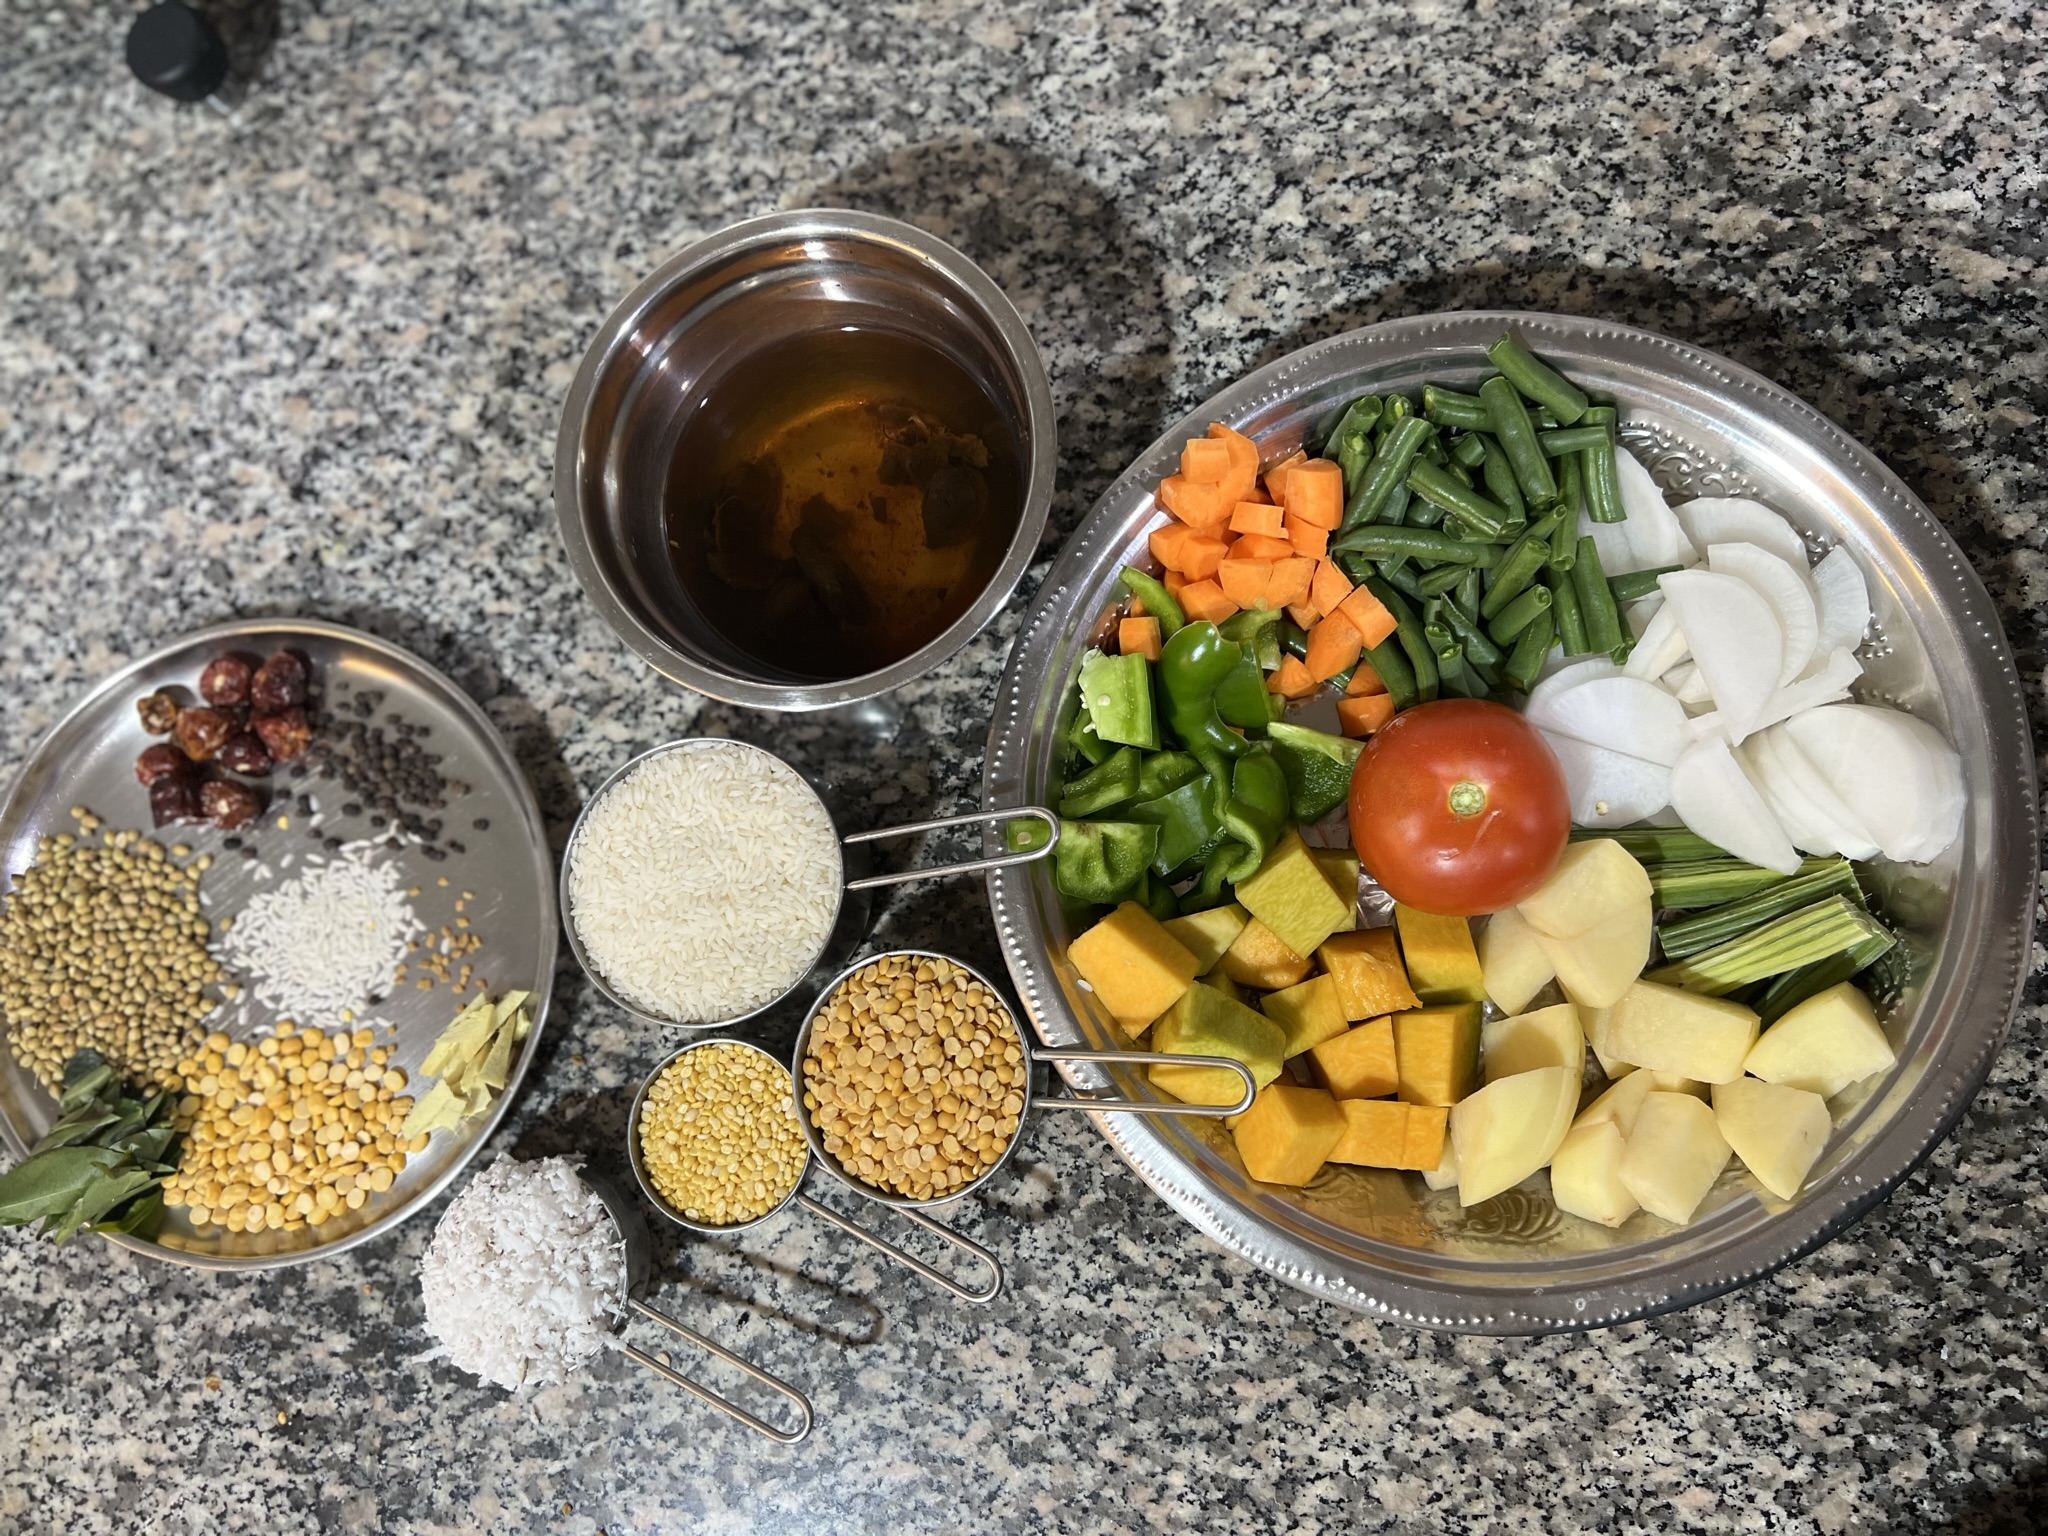 Ingredients to make sambar sadam